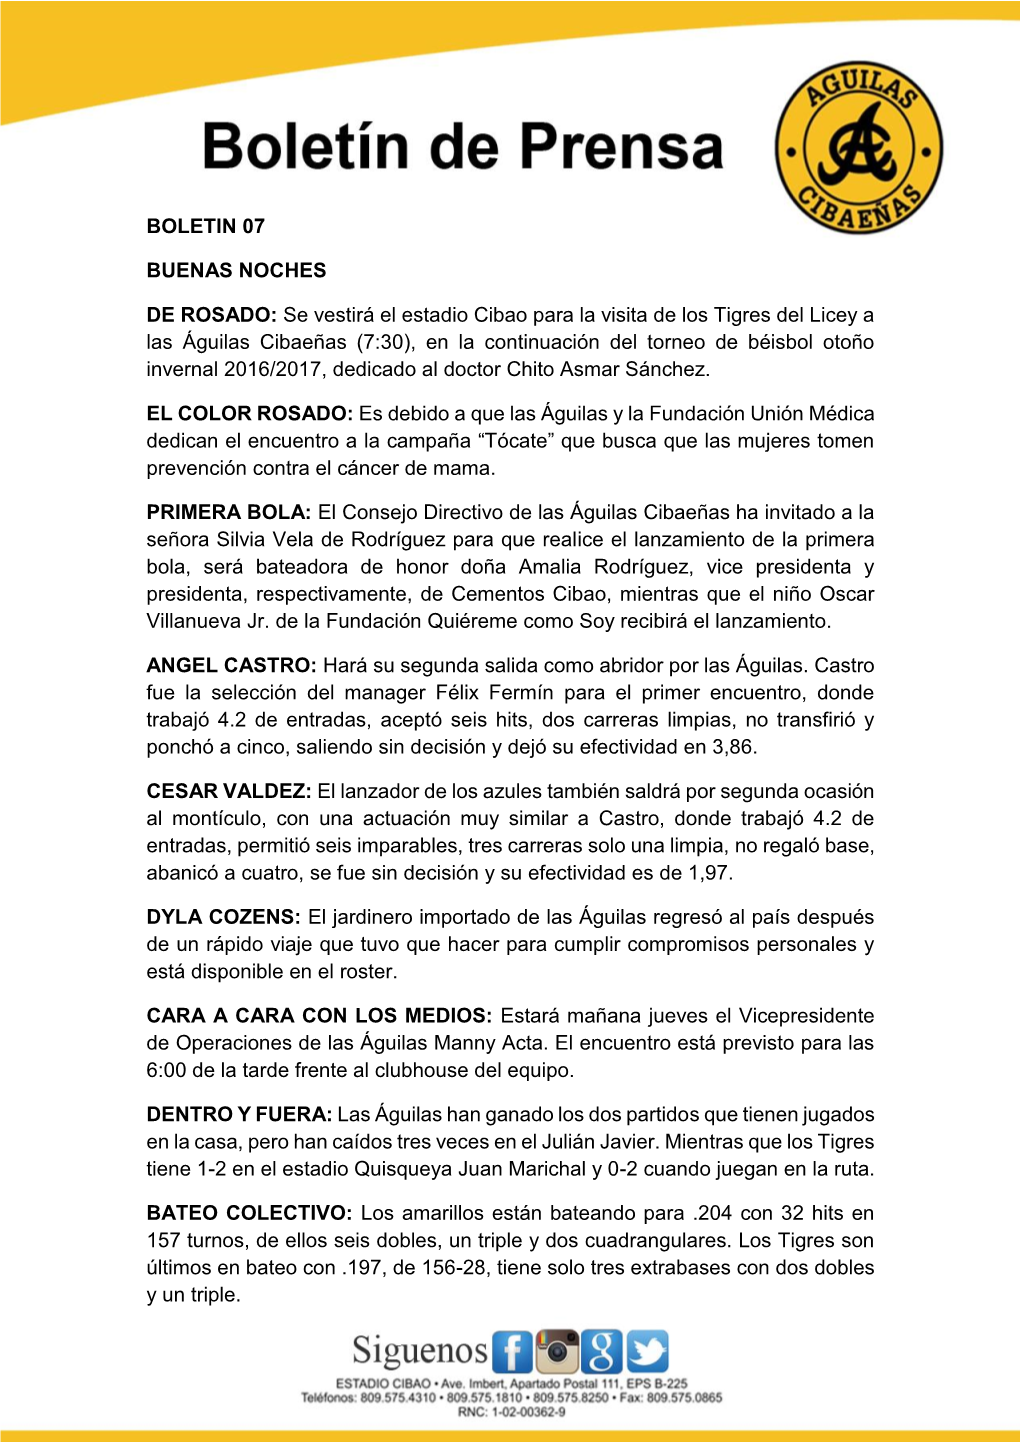 BOLETIN 07 BUENAS NOCHES DE ROSADO: Se Vestirá El Estadio Cibao Para La Visita De Los Tigres Del Licey a Las Águilas Cibaeñas